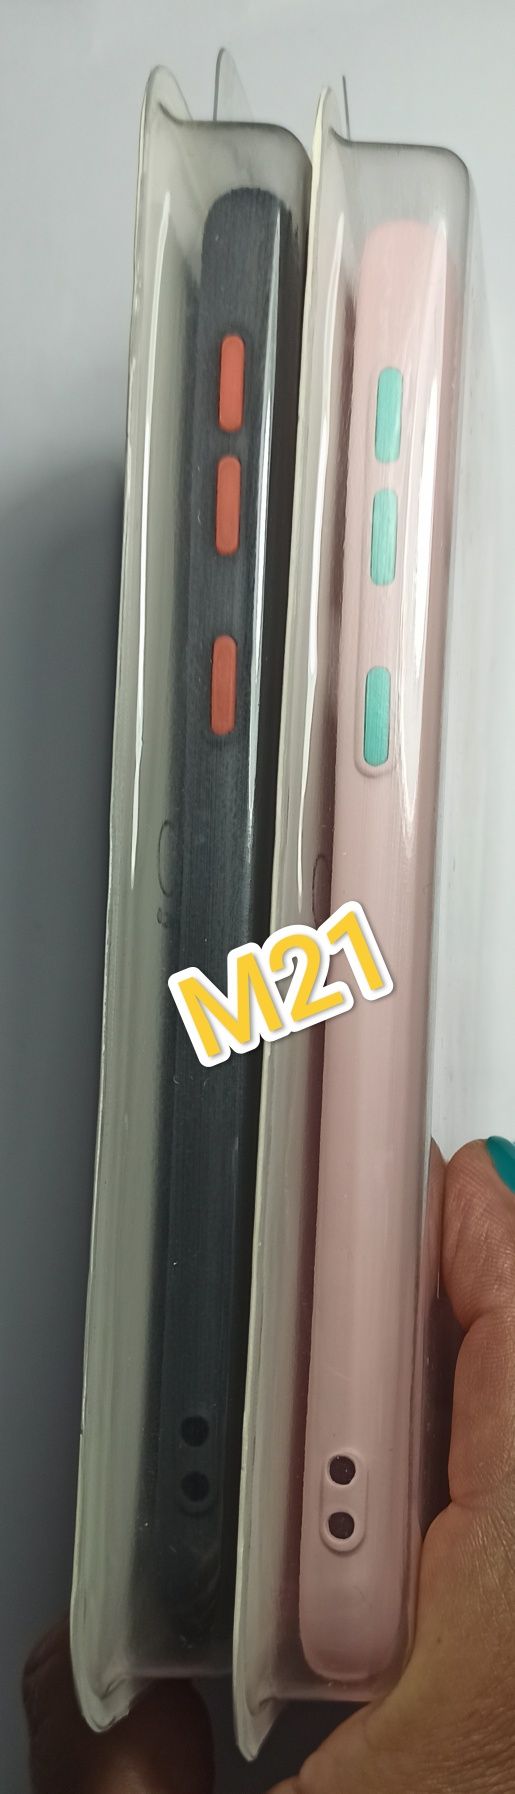 Capa Soft P/ Samsung M21 / A31 / A51 / A71 / S10 Lite